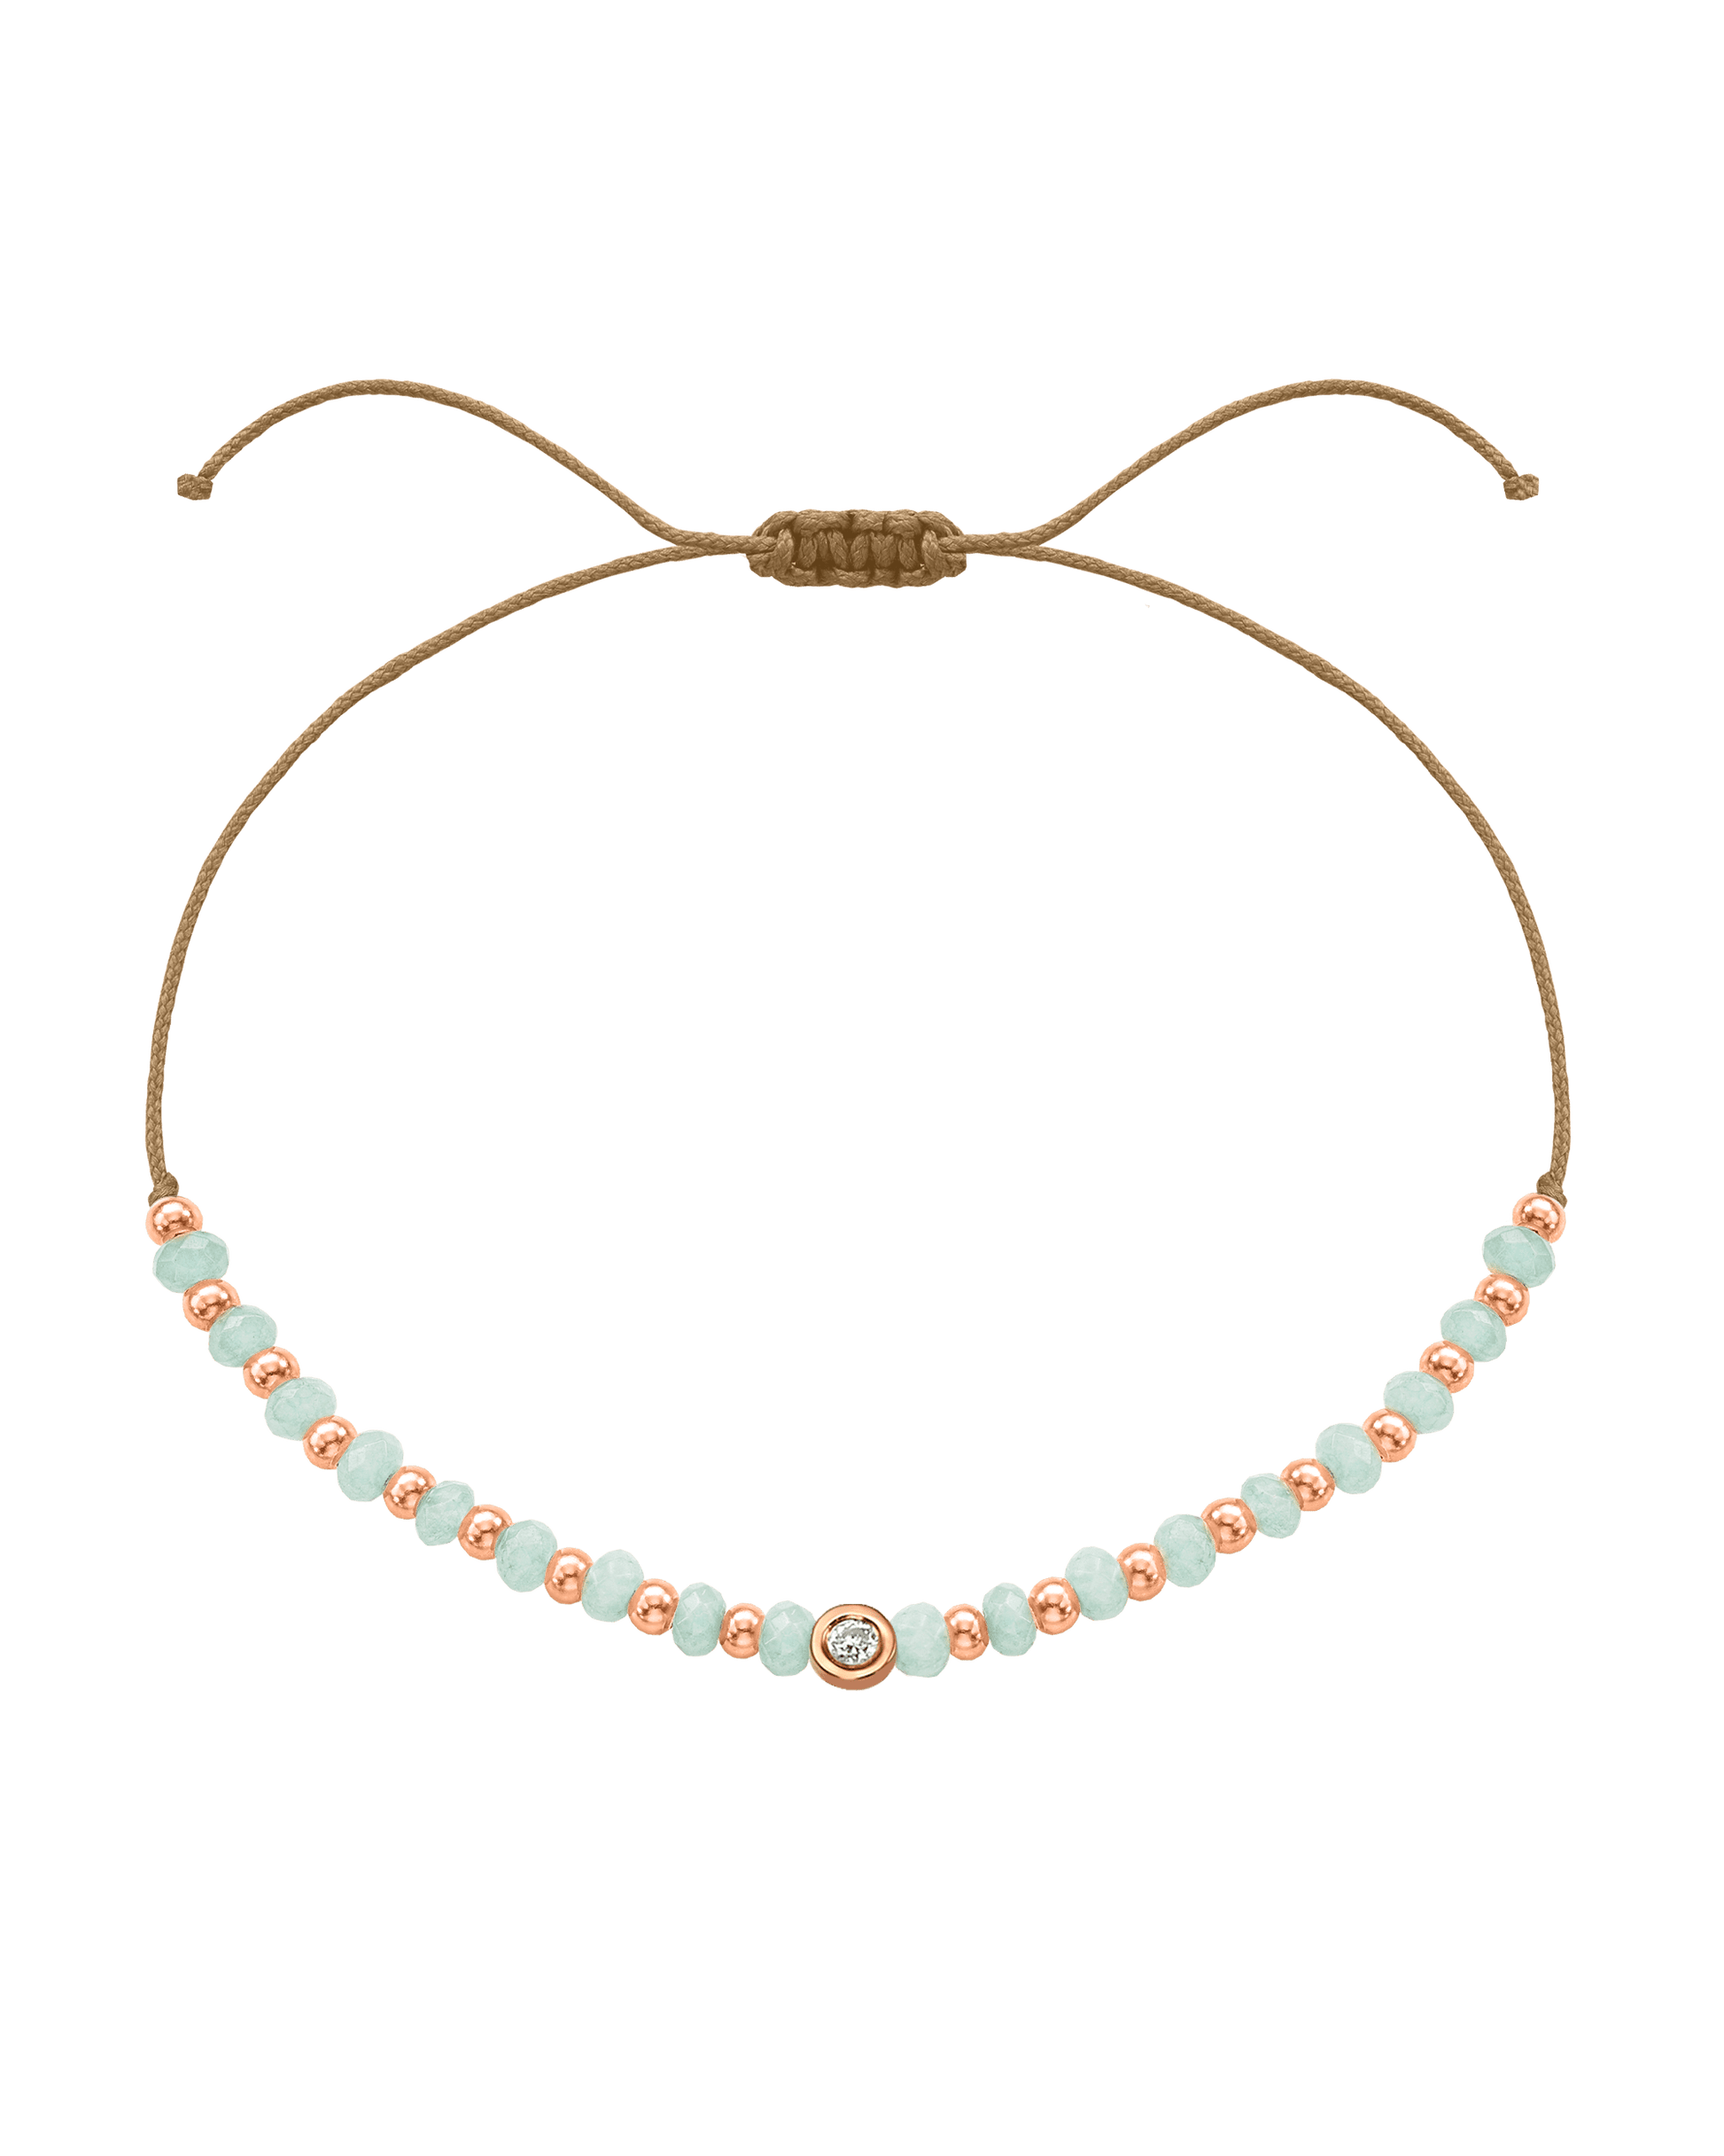 Apatite Gemstone String of Love Bracelet for Inspiration - 14K Rose Gold Bracelets 14K Solid Gold Camel Small: 0.03ct 